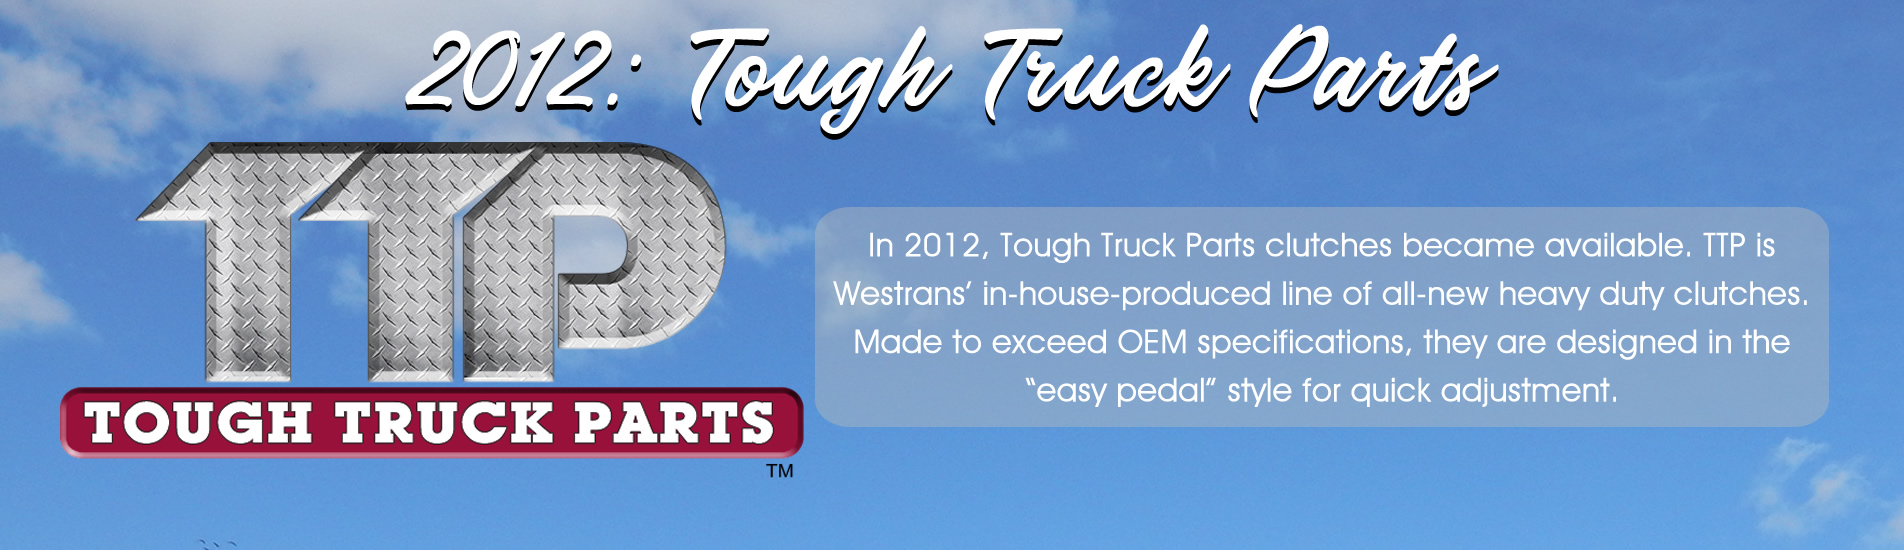 westrans-Tough-Truck-Parts-2010